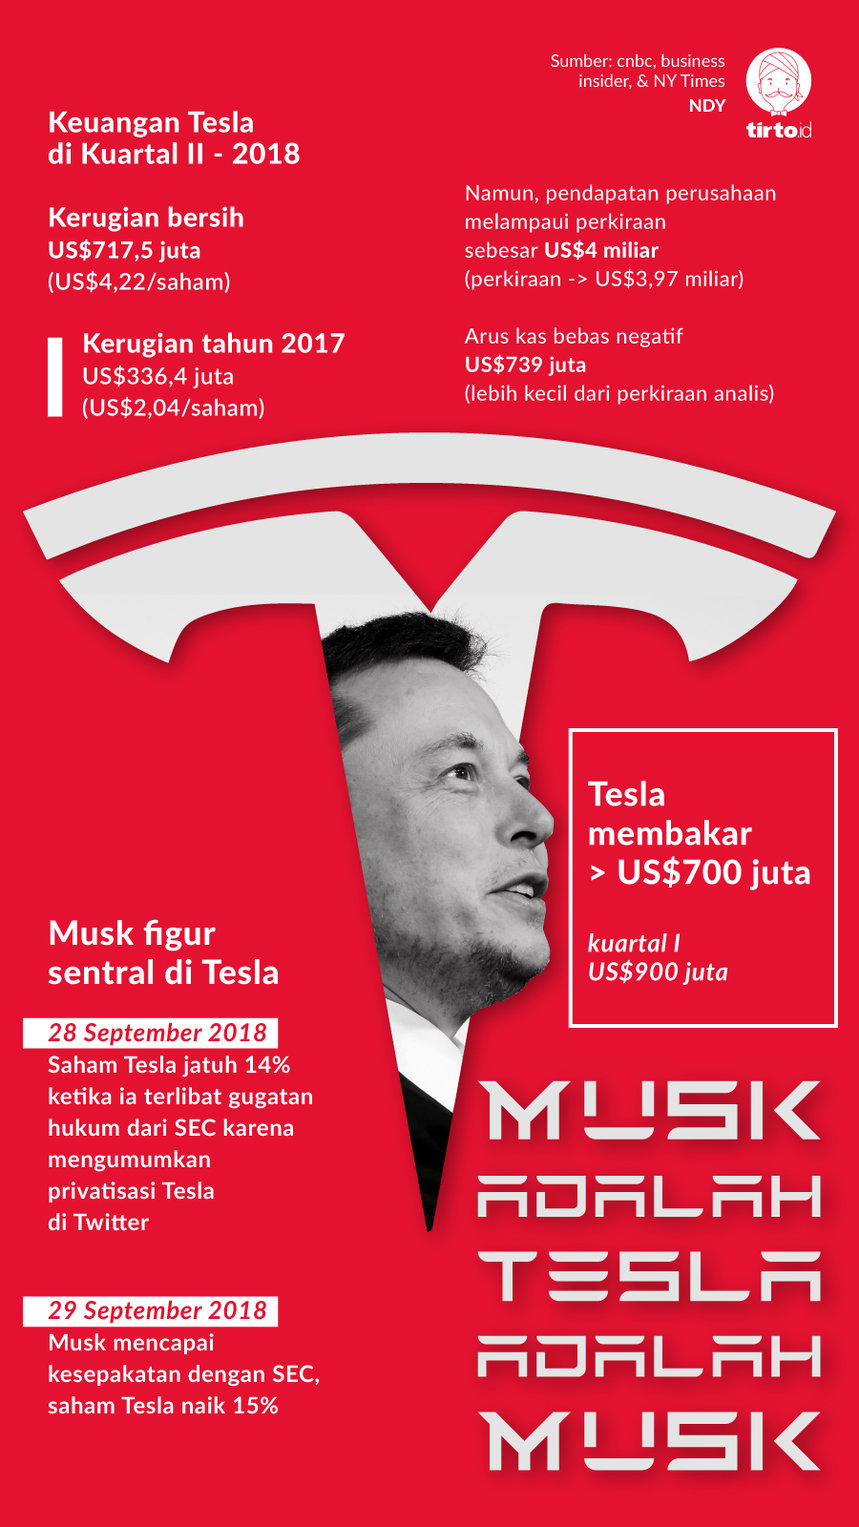 Infografik Musk Adalah tesla adalah Musk